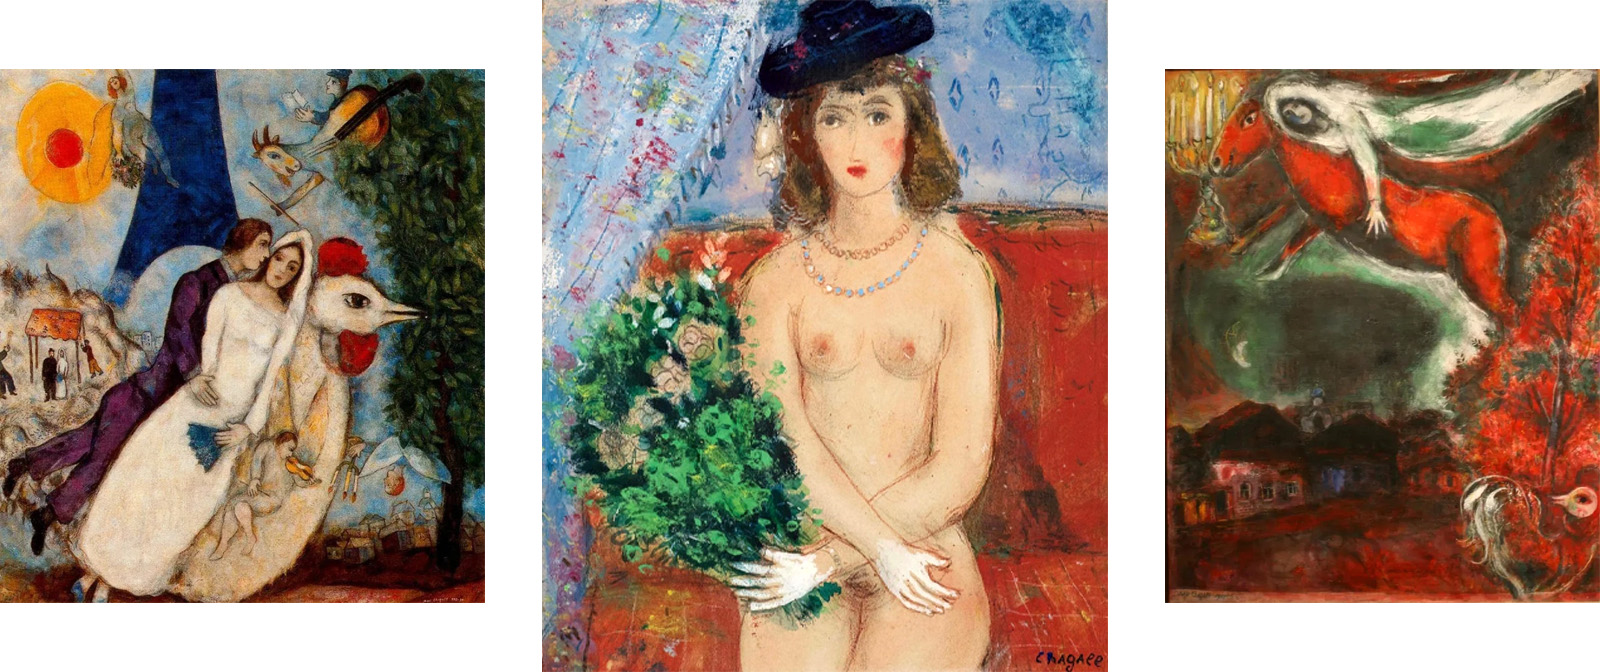 ​Почему Марк Шагал рисовал картины без одежды, а за их подлинники платят огромные деньги? История жизни художника, позволяющая лучше понять его творчество